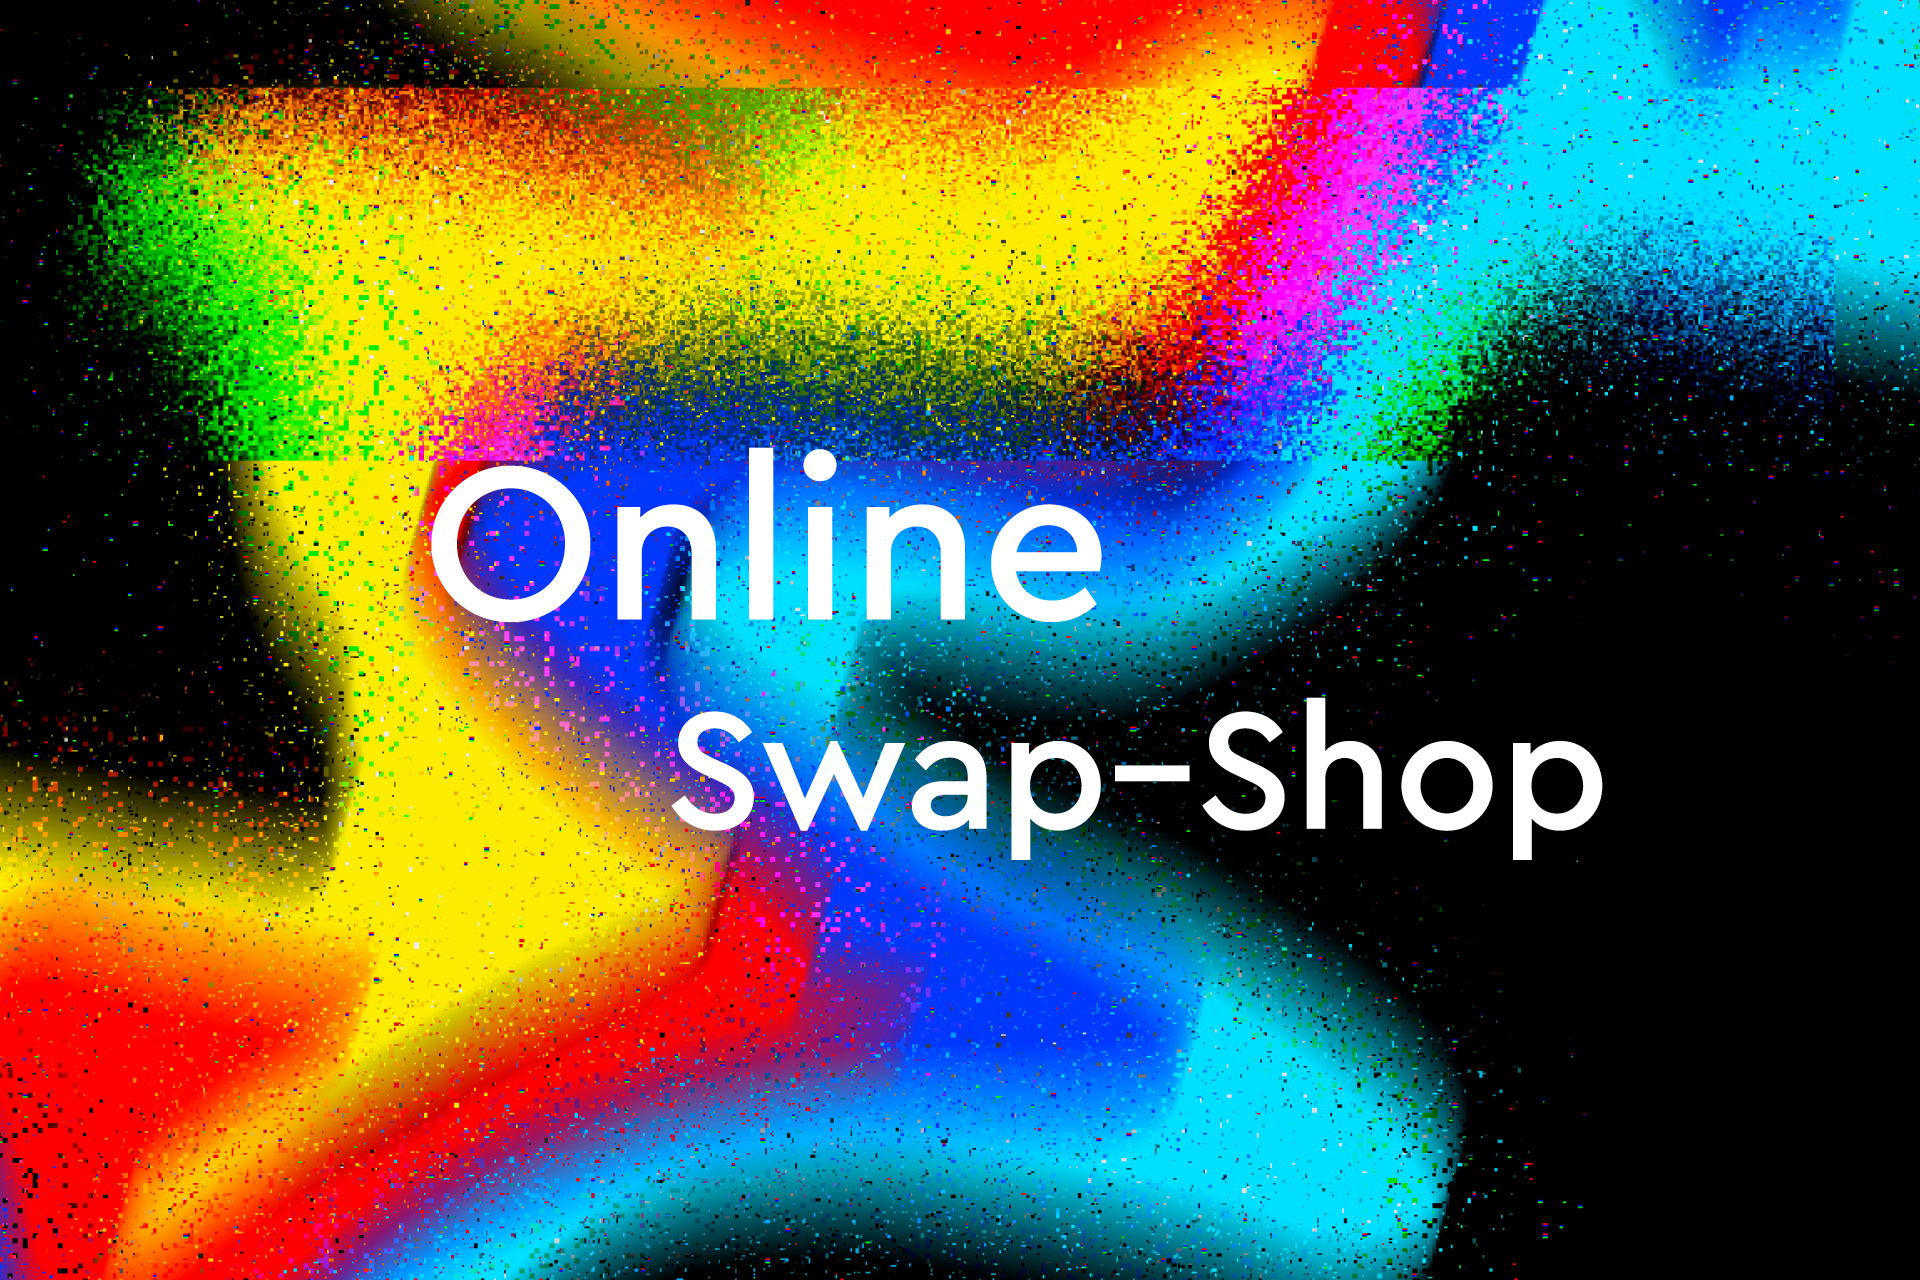 Comode - online swap shop